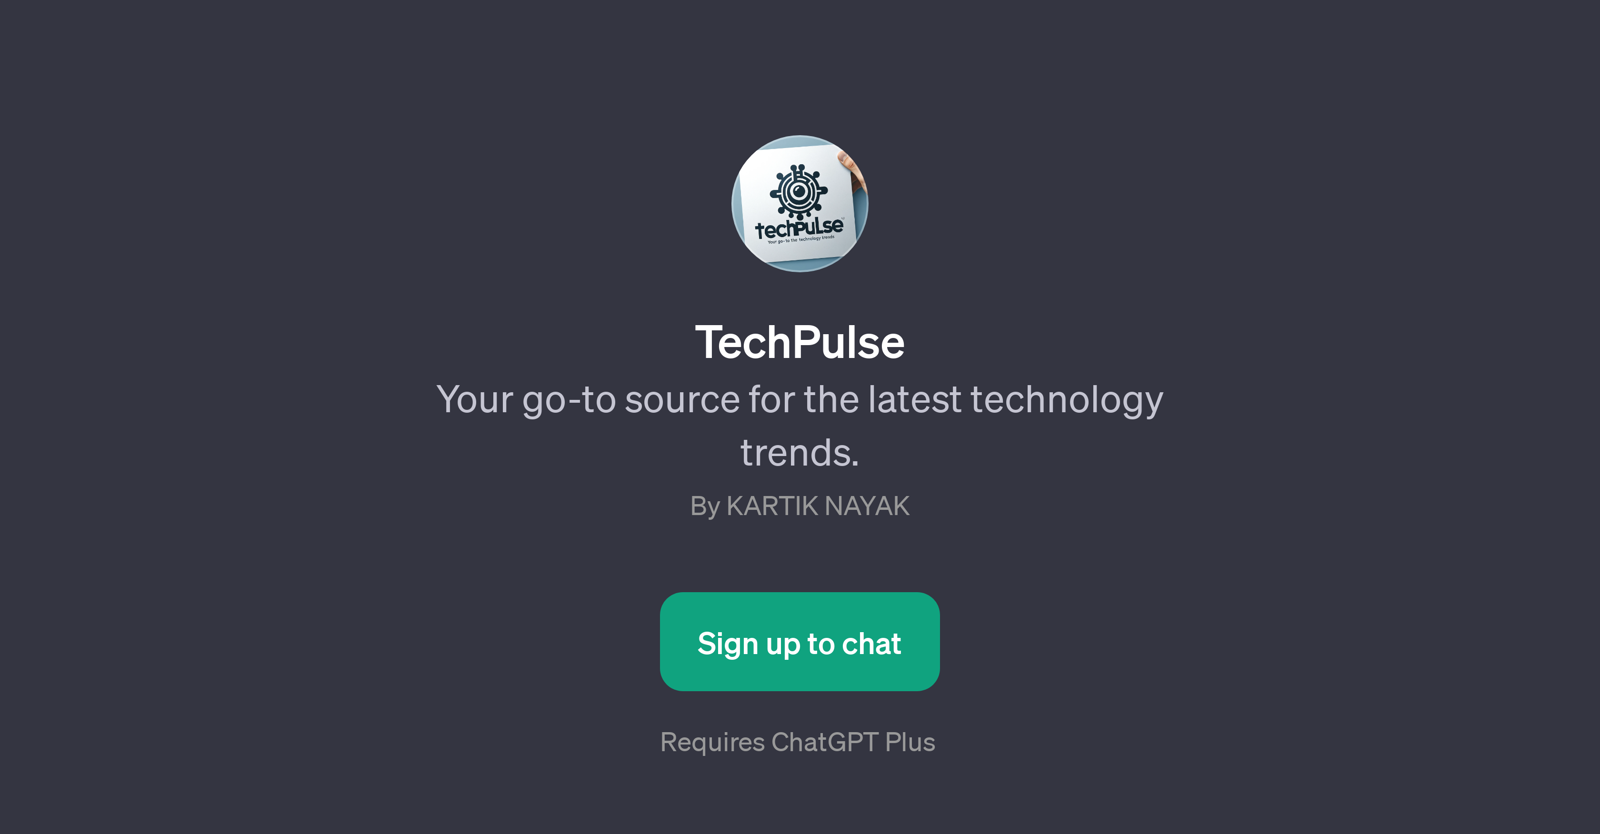 TechPulse website